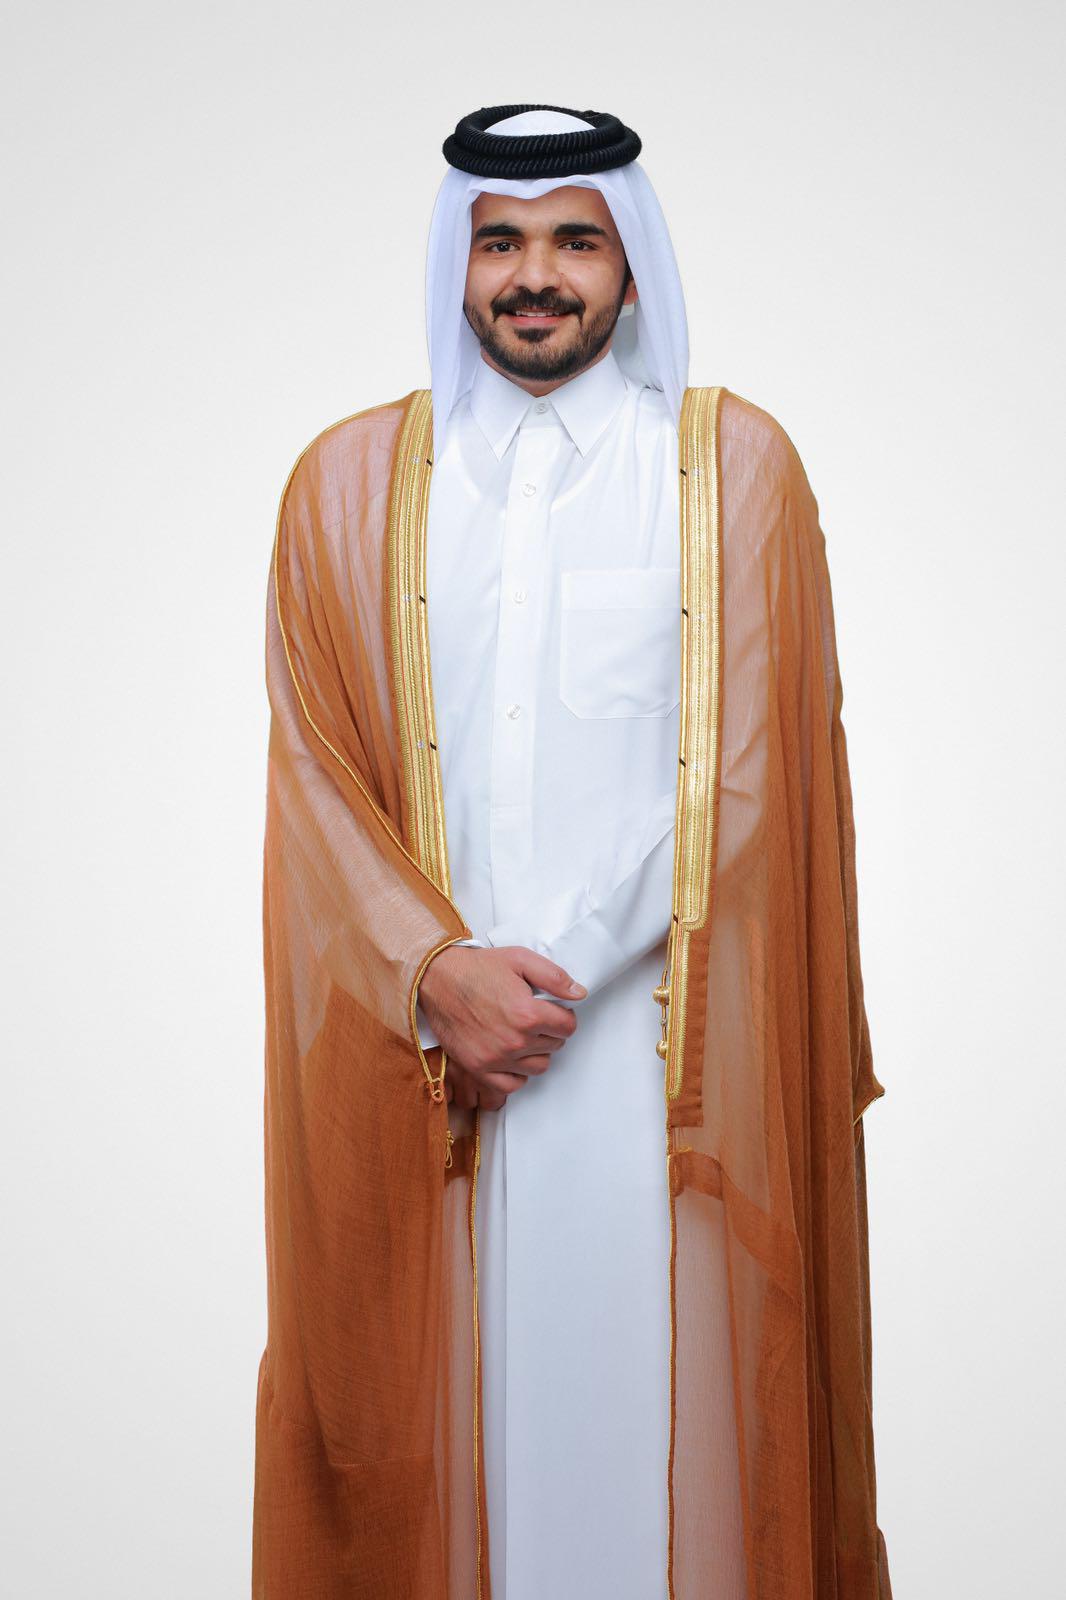 الشيخ جوعان بن حمد آل ثاني علامة تاريخية مضيئة في عالم الرياضة القطرية والعالمية 